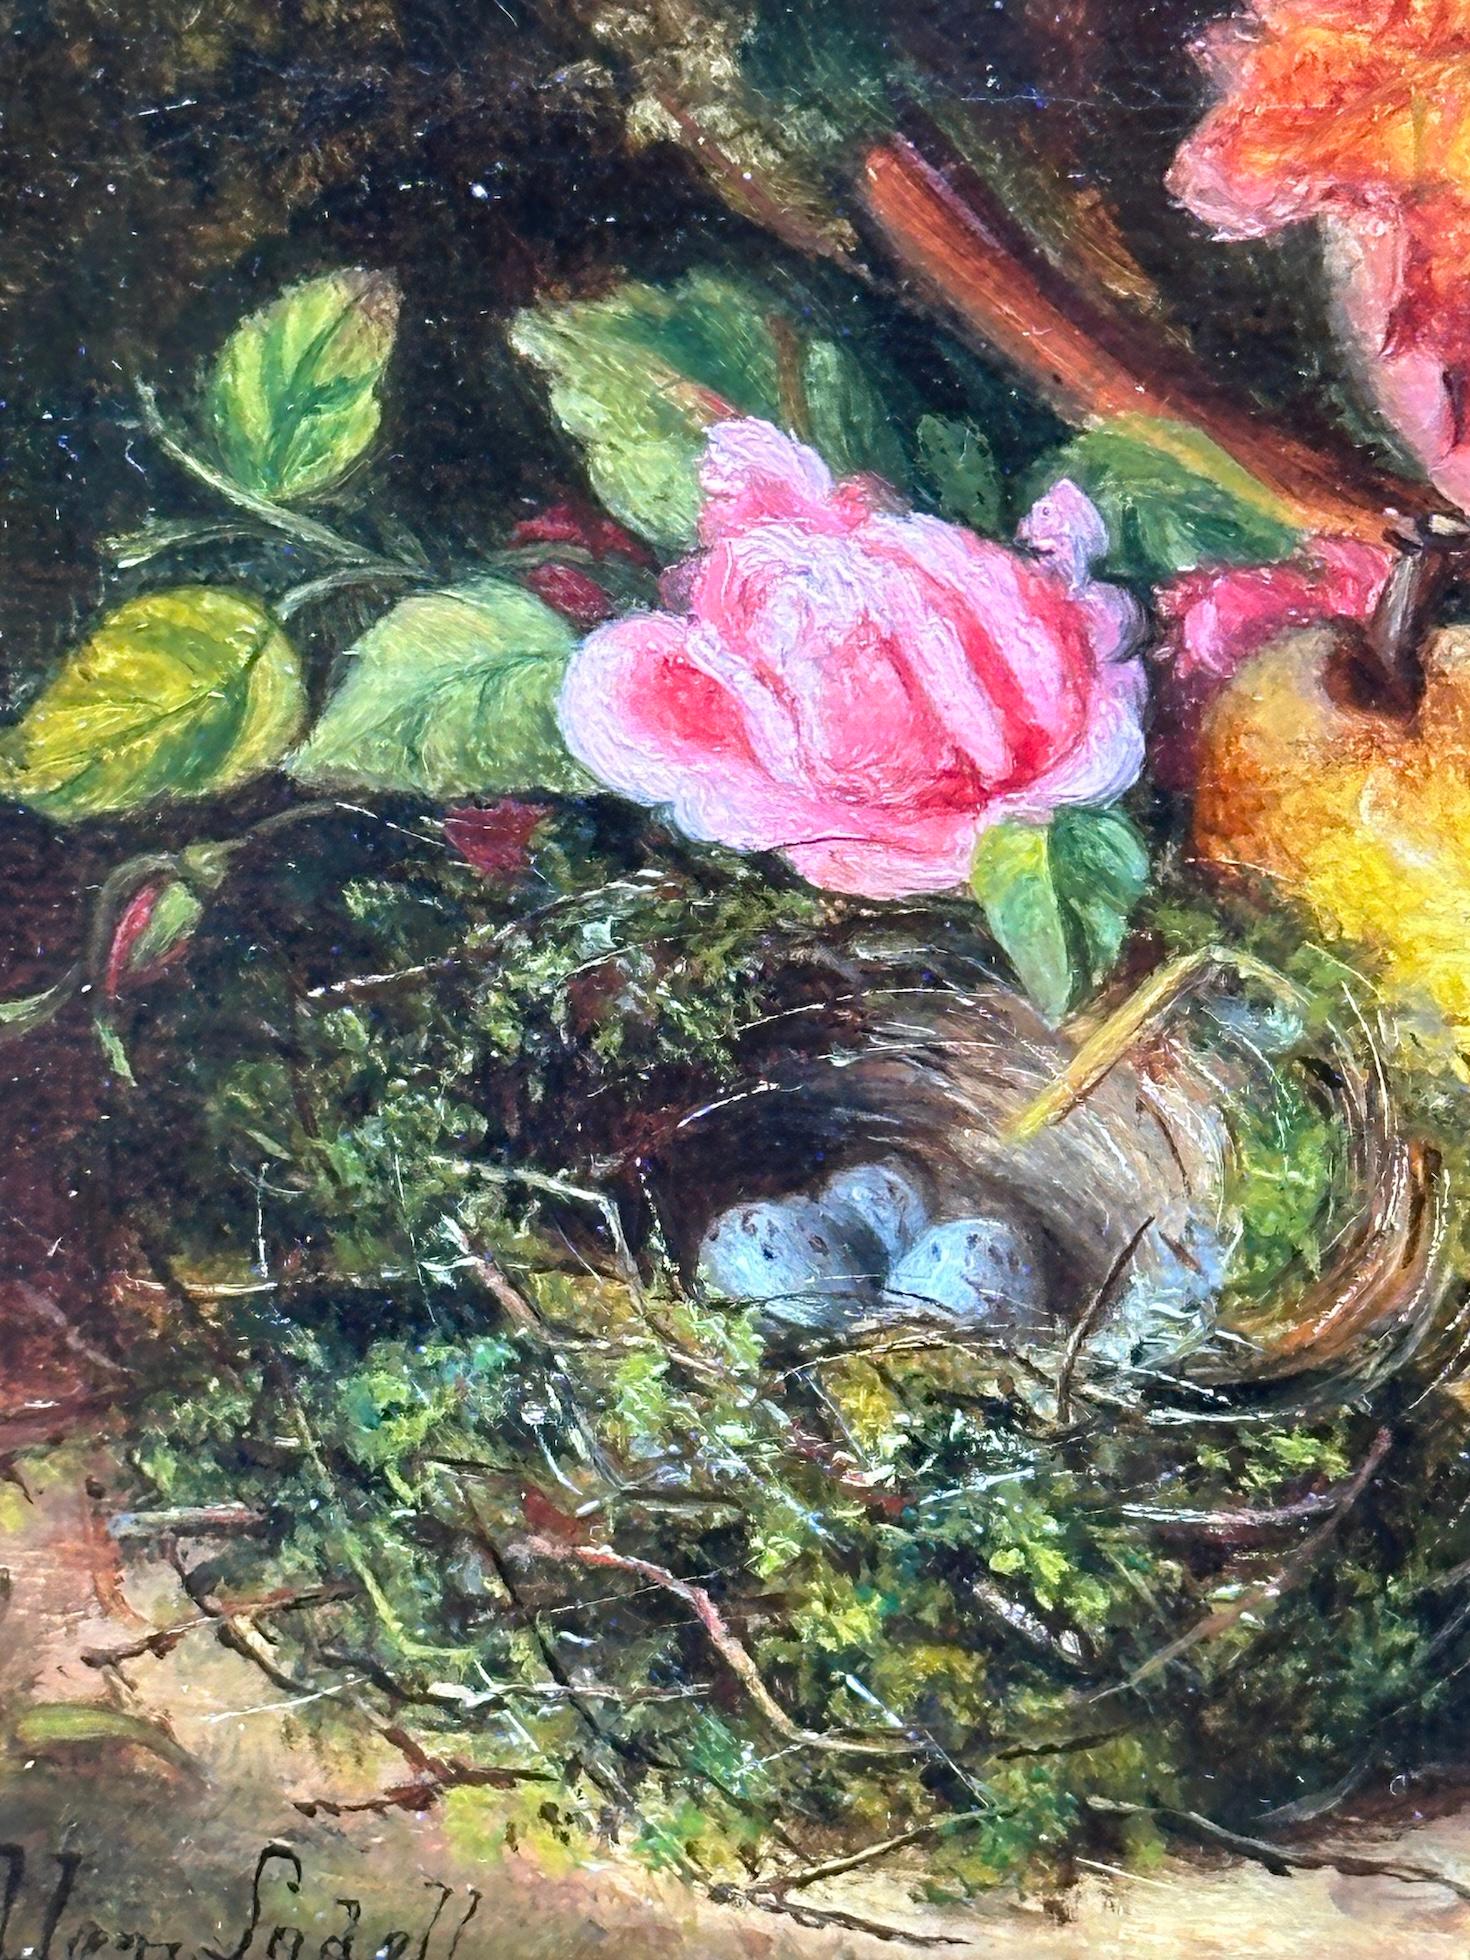 Englisches Stillleben aus dem 19. Jahrhundert mit Blumen, Früchten und Vogelnest auf einer moosbewachsenen Bank von Ellen Ladell

Der Kauf von Ellen Ladells englischem Stillleben aus dem 19. Jahrhundert mit Blumen, Früchten und einem Vogelnest auf